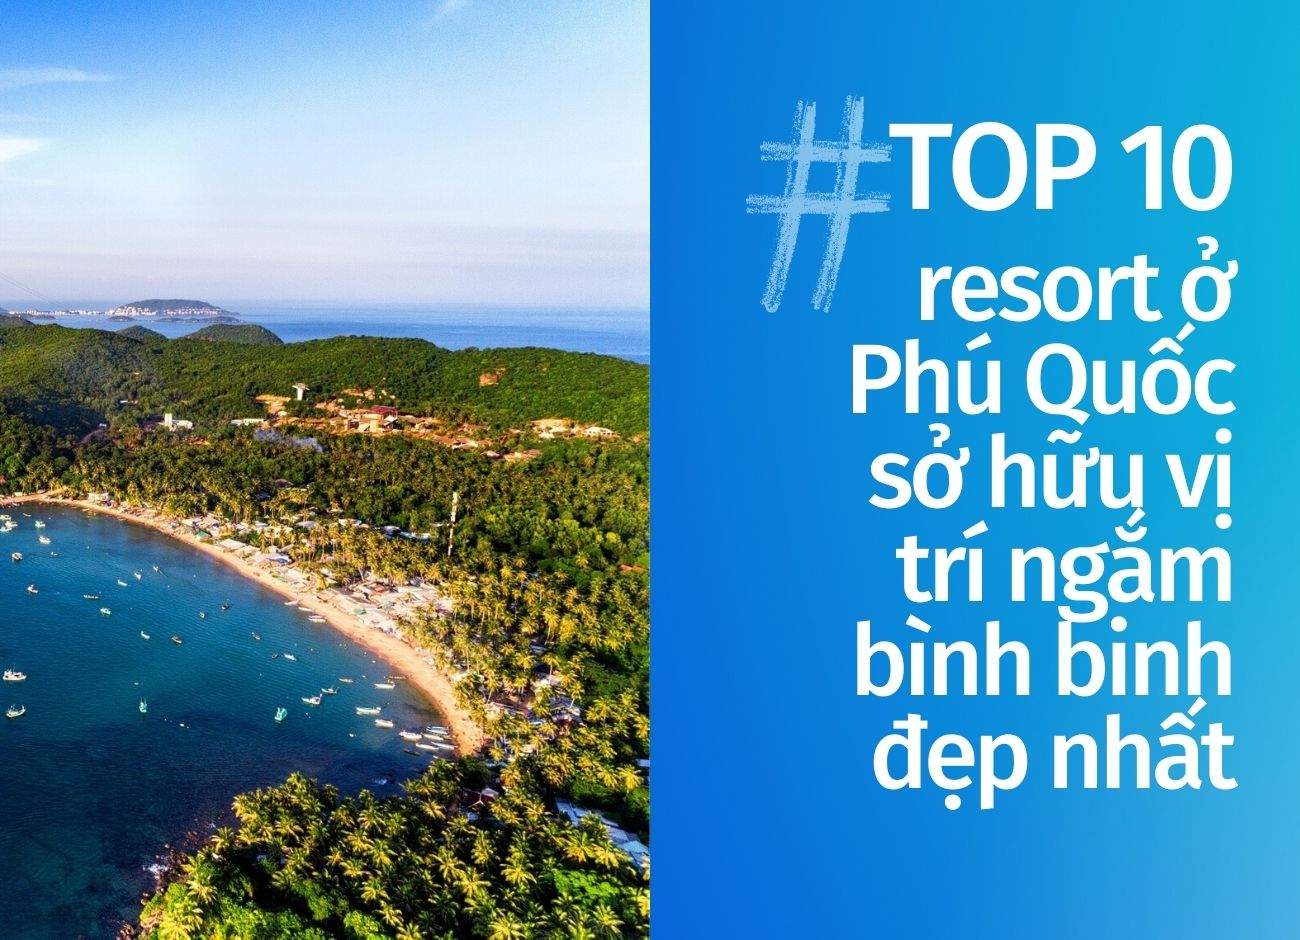 Top 10 resort Phú Quốc sở hữu vị trí ngắm bình binh đẹp nhất cập nhật tháng 12 năm 2022